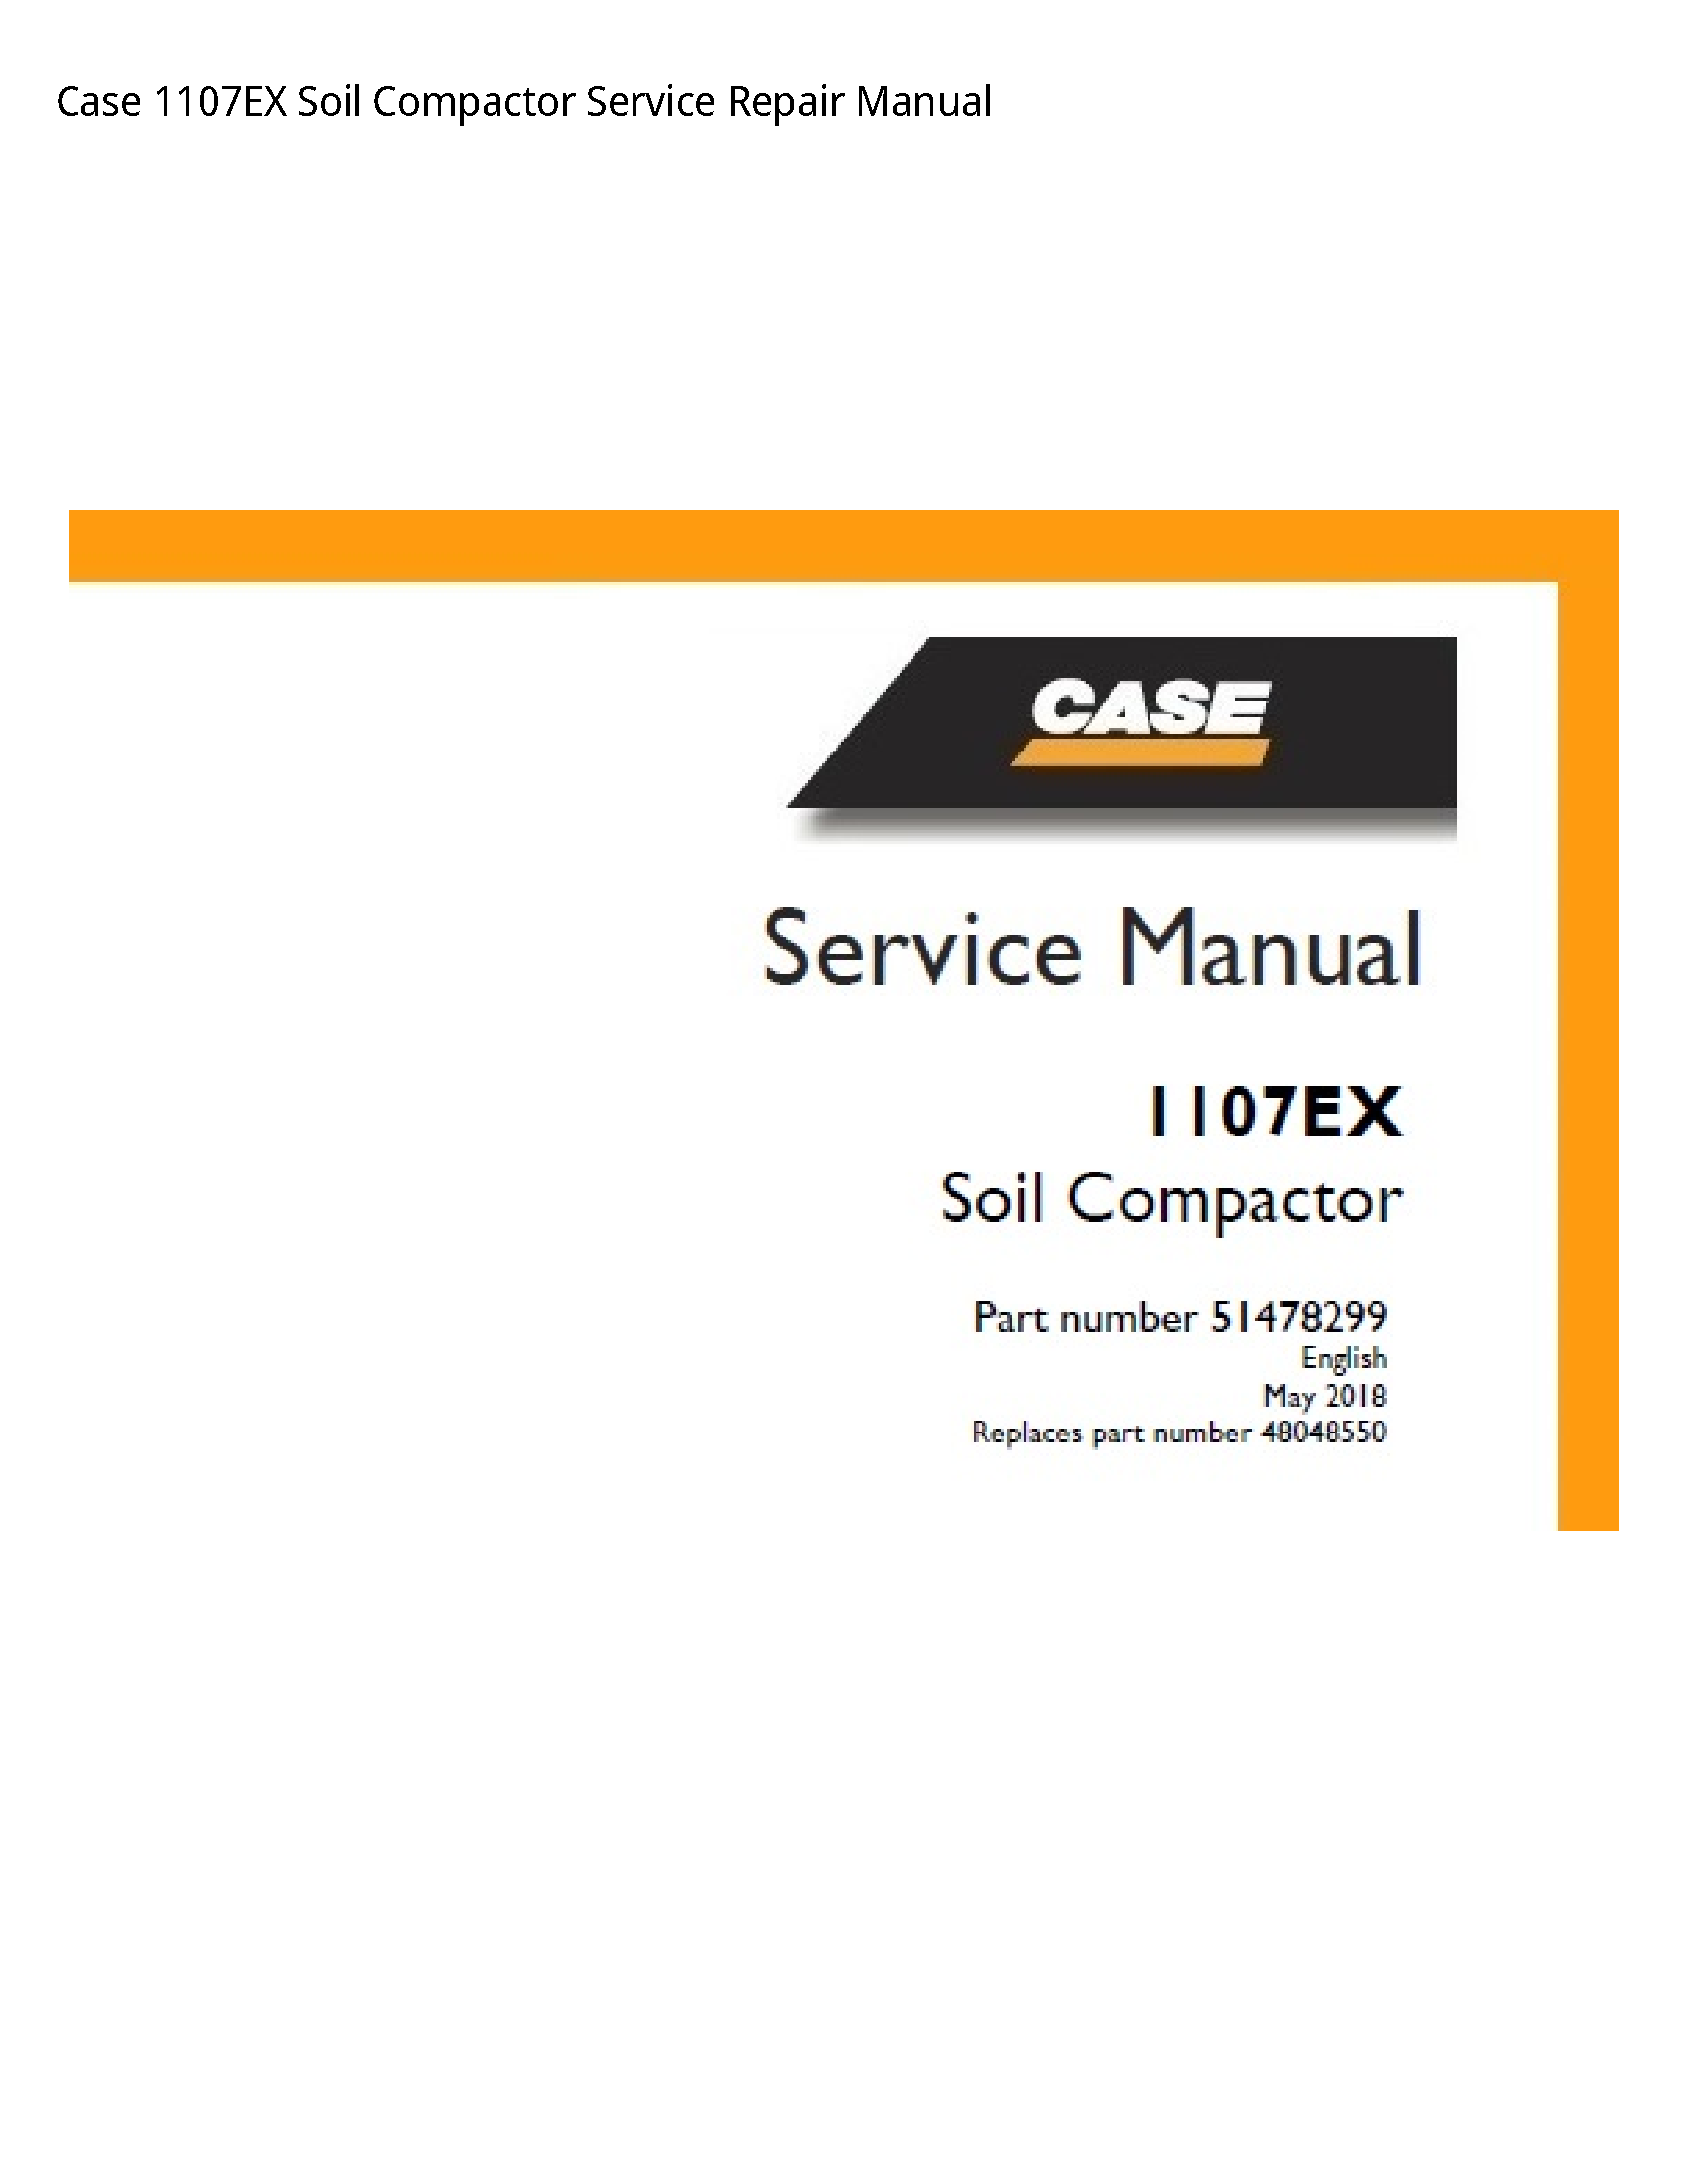 Case/Case IH 1107EX Soil Compactor manual